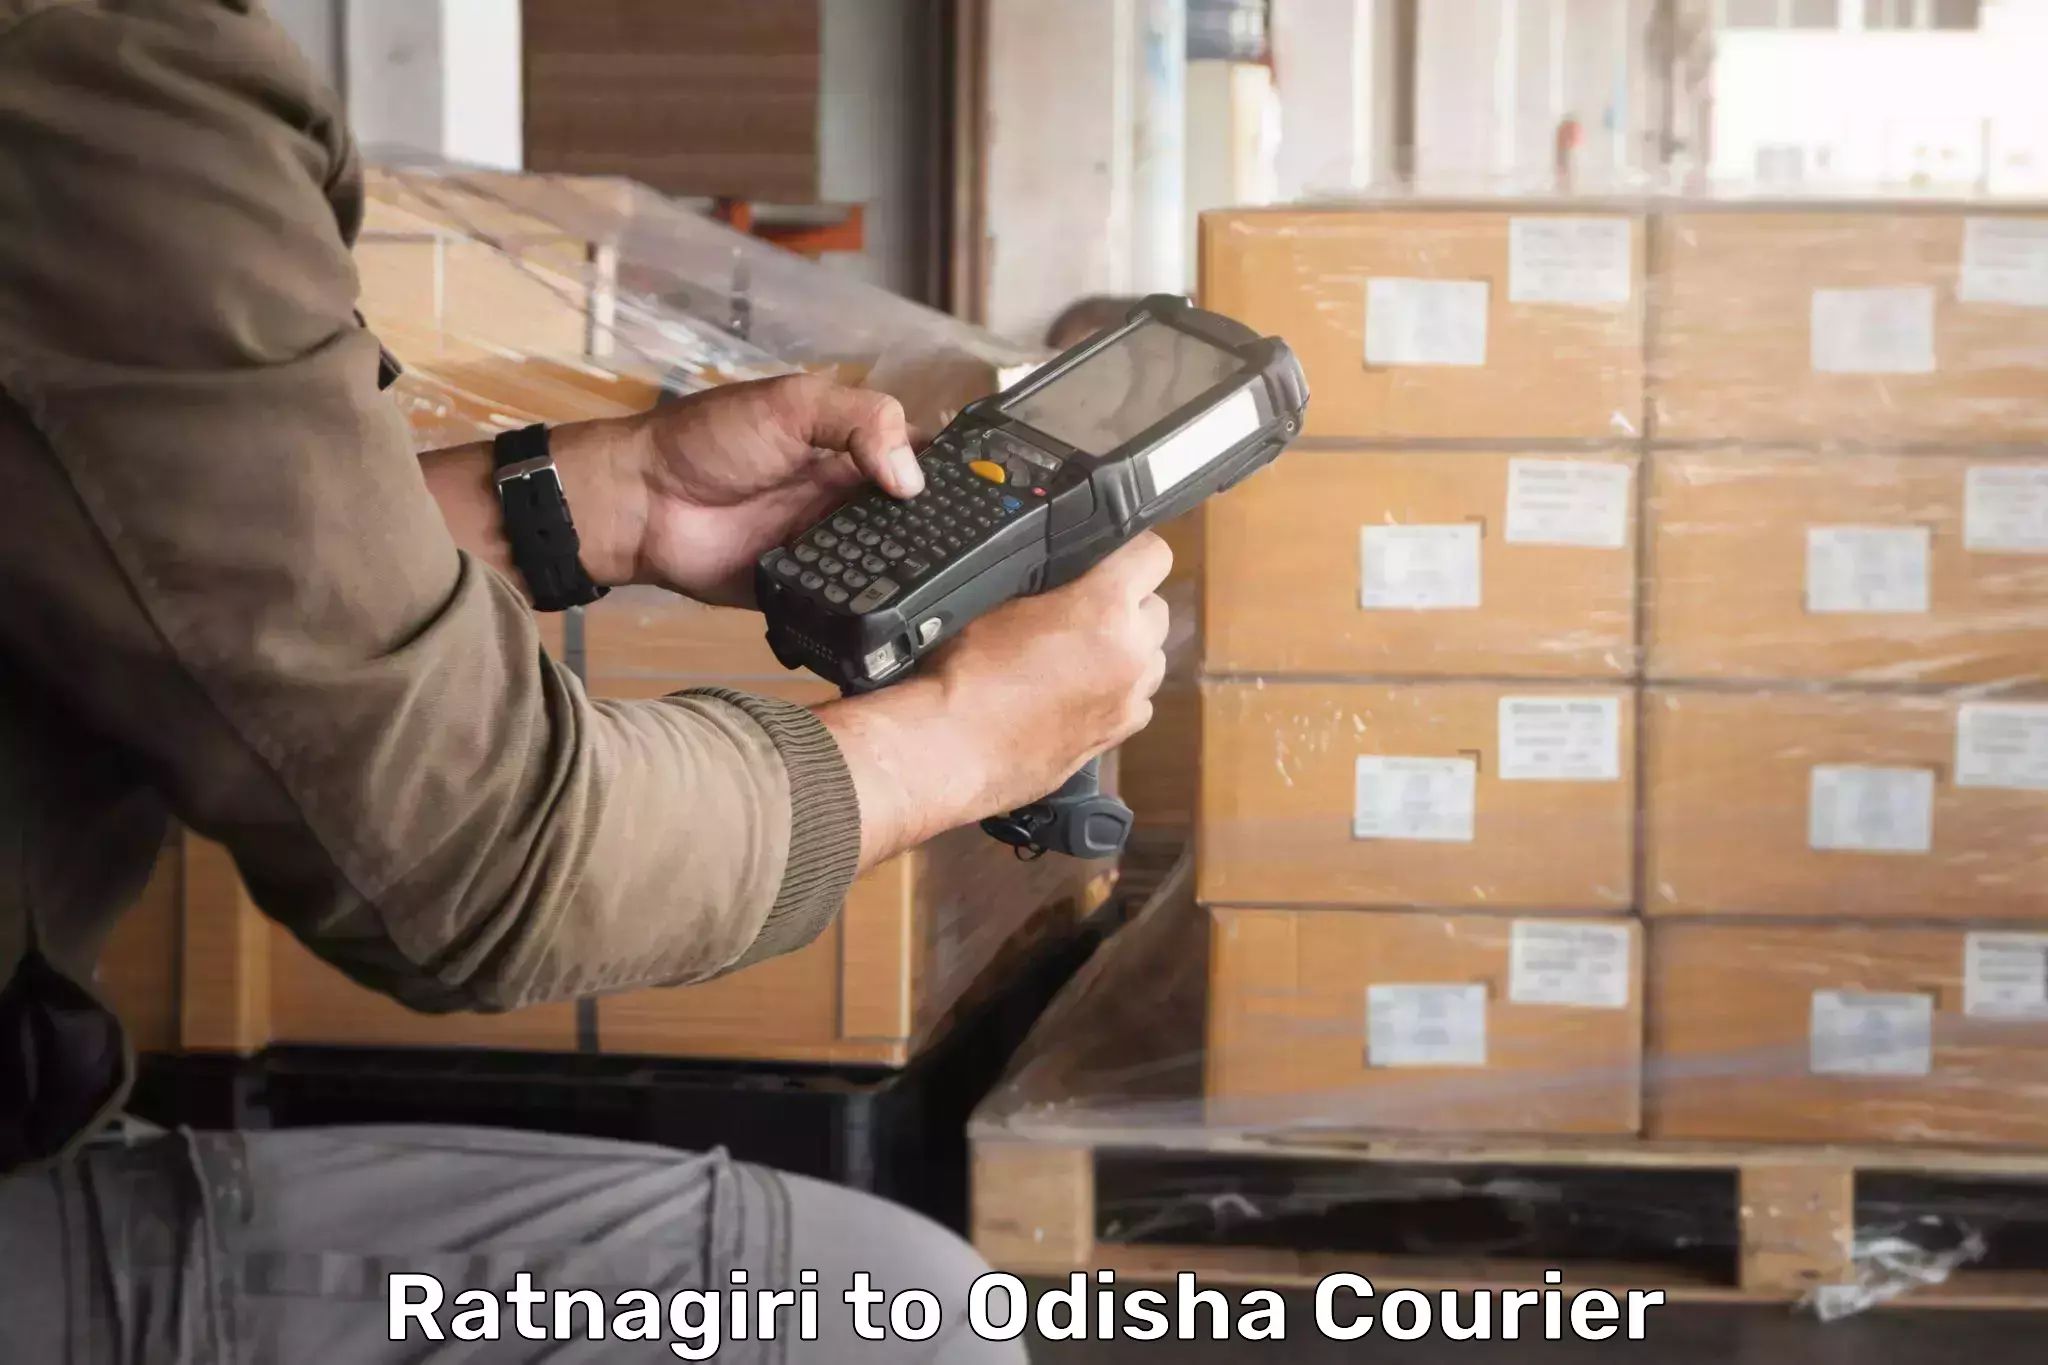 Cost-effective courier solutions Ratnagiri to Raruan